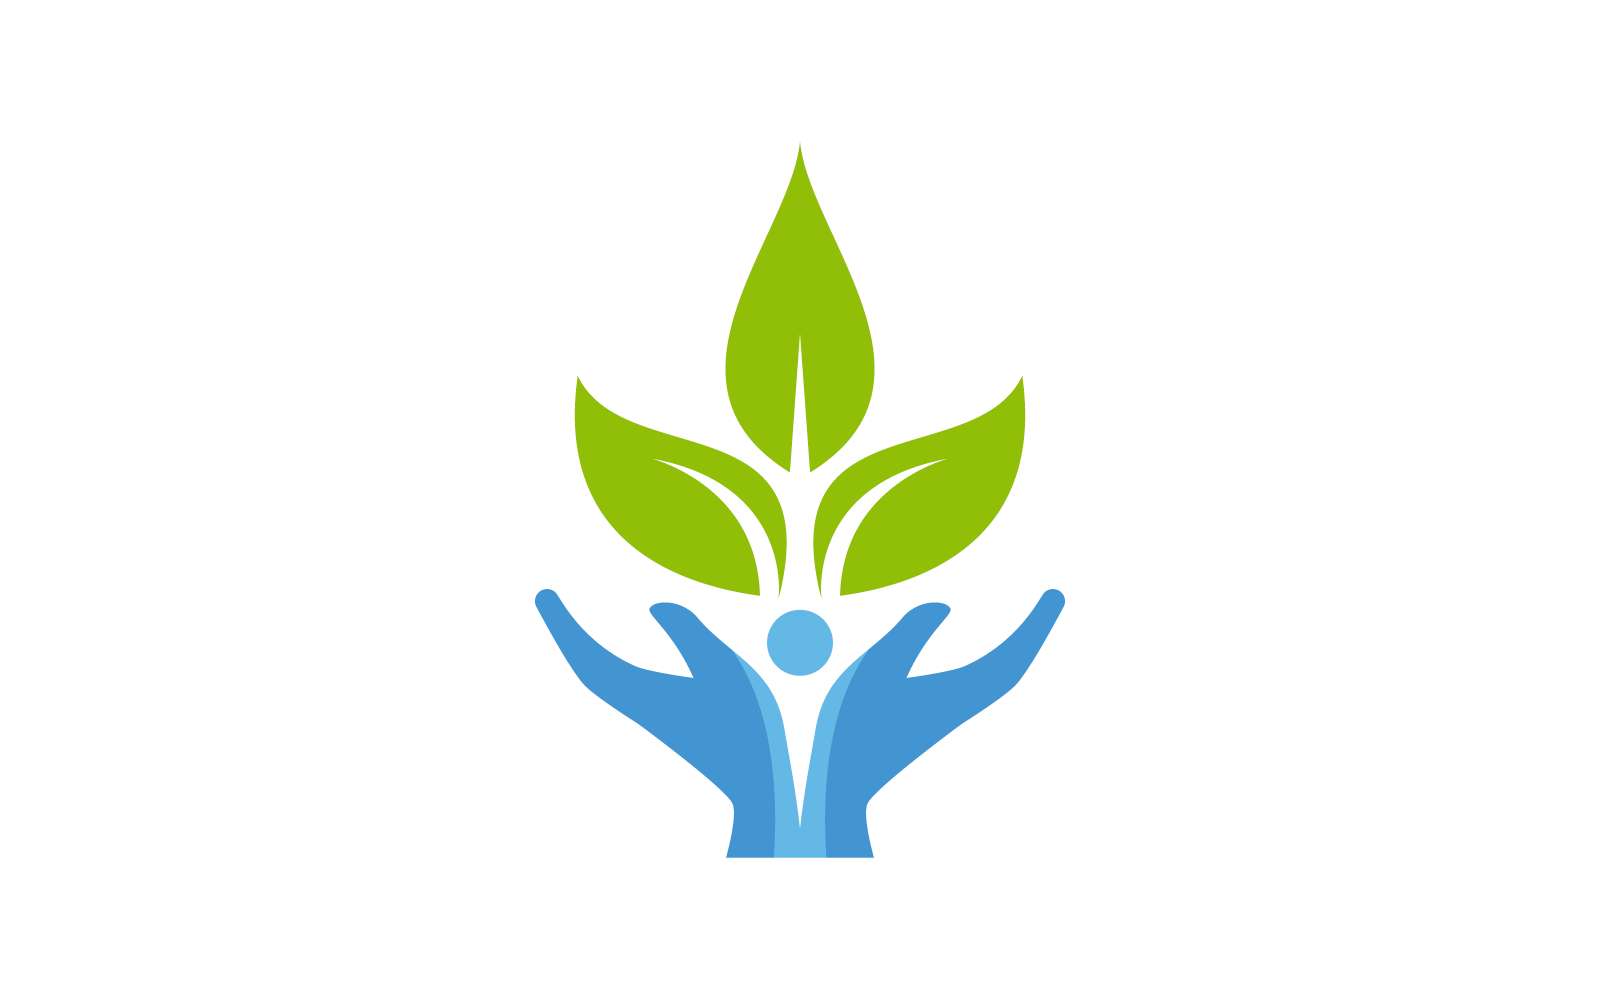 Hand and leaf illustration logo design